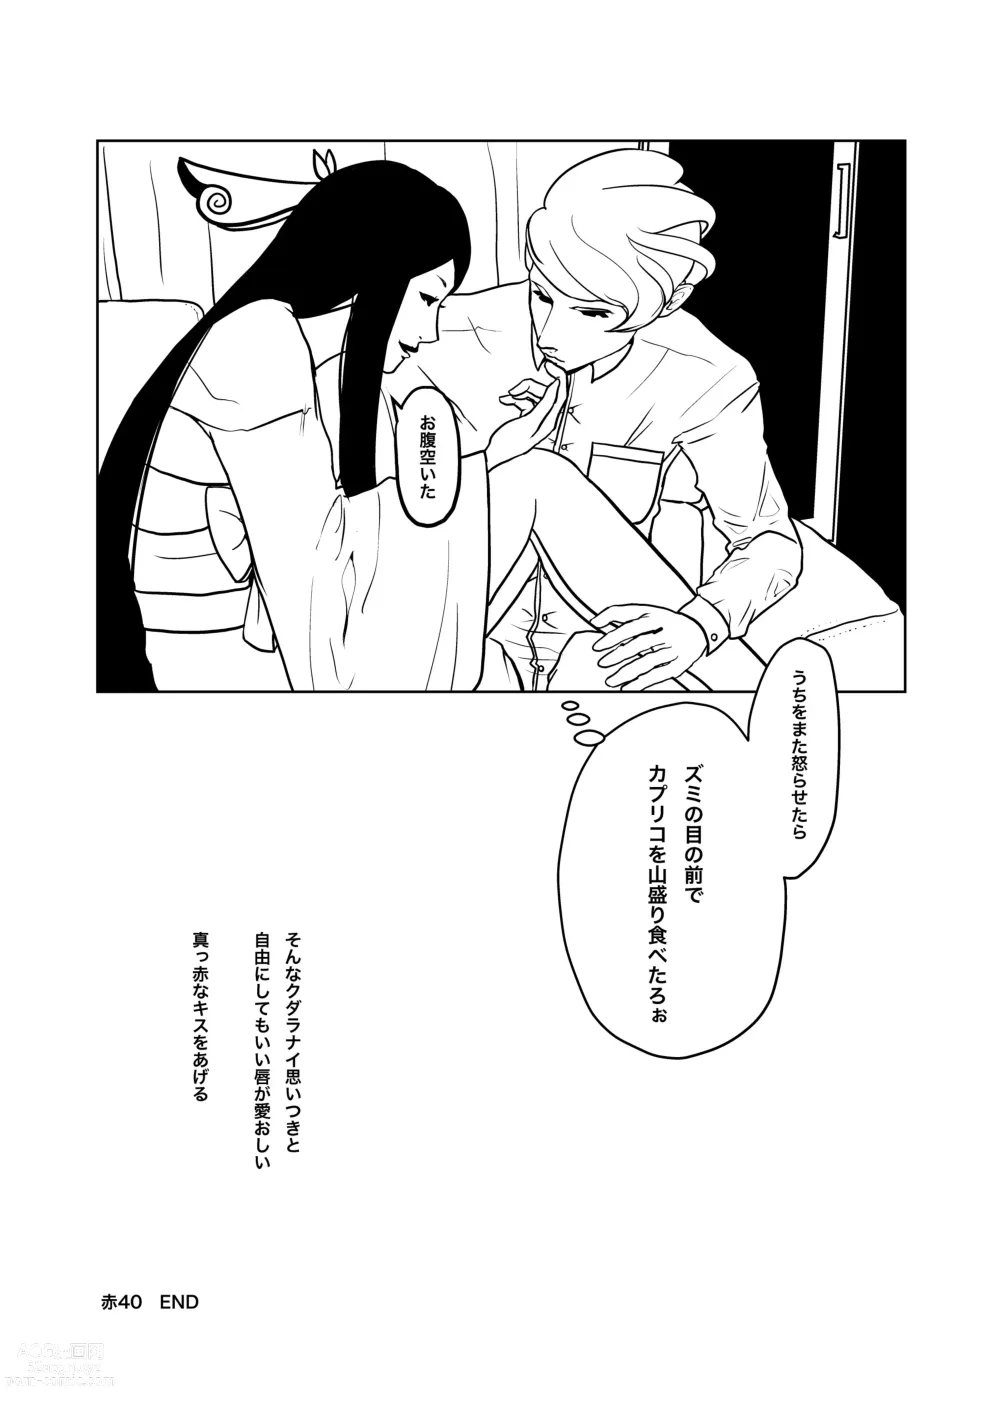 Page 26 of doujinshi Zumimashu Kairaku Busshitsu ni Anata no Namae o Tsukete'